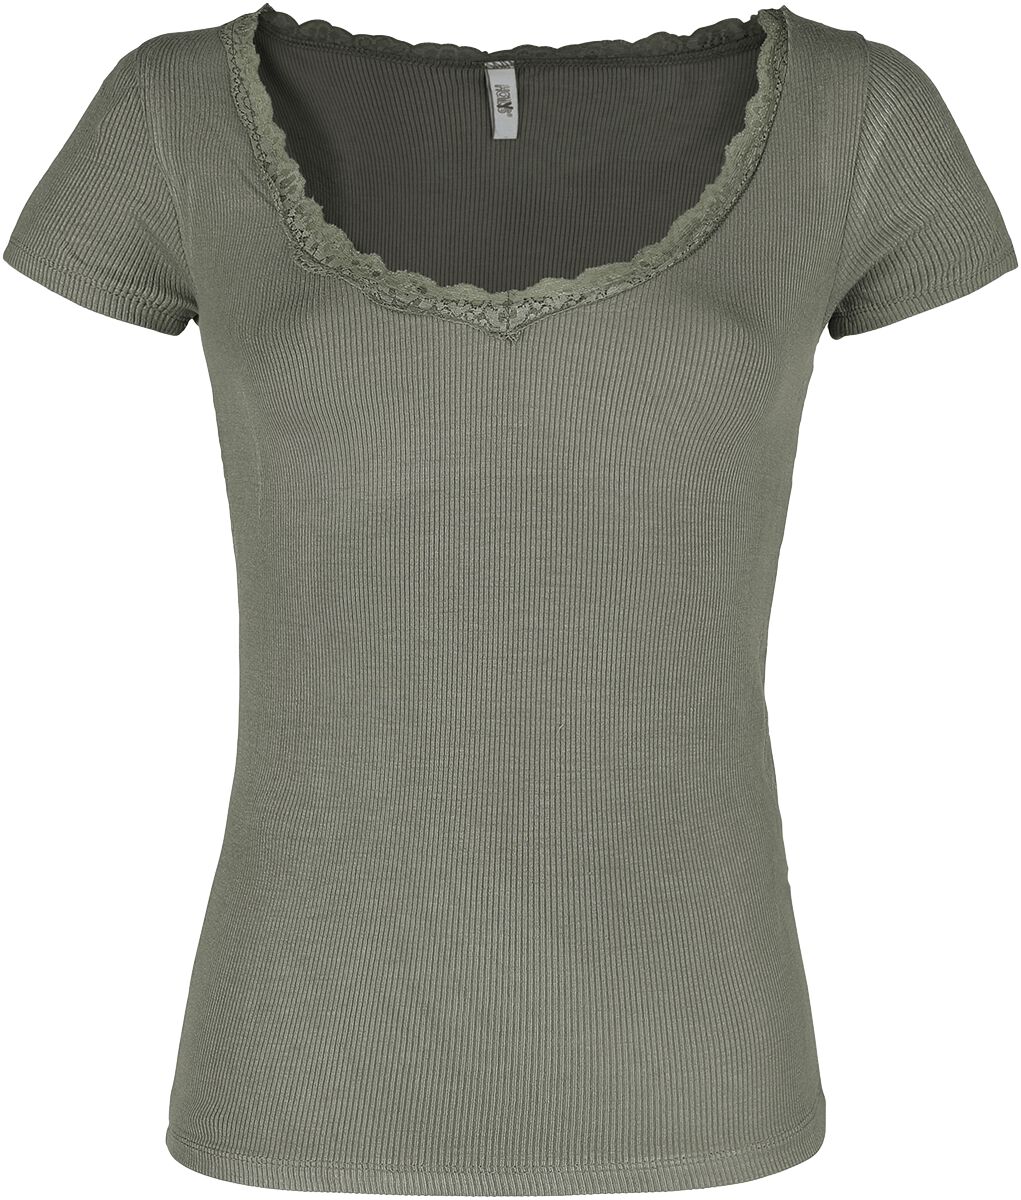 Hailys T-Shirt - Mariella - XS bis XL - für Damen - Größe M - khaki